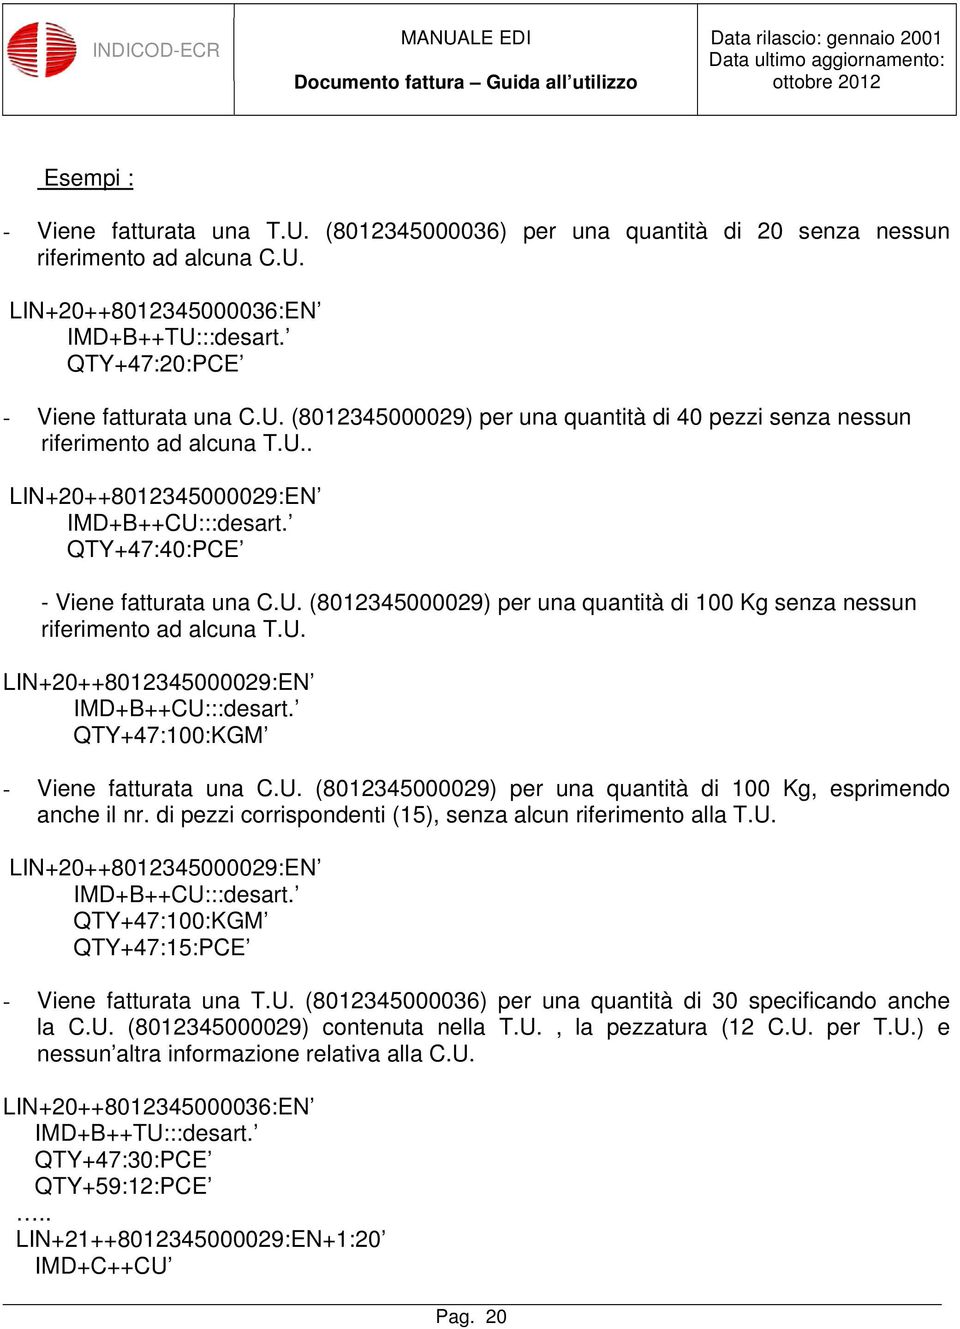 U. (8012345000029) per una quantità di 100 Kg, esprimendo anche il nr. di pezzi corrispondenti (15), senza alcun riferimento alla T.U. LIN+20++8012345000029:EN IMD+B++CU:::desart.